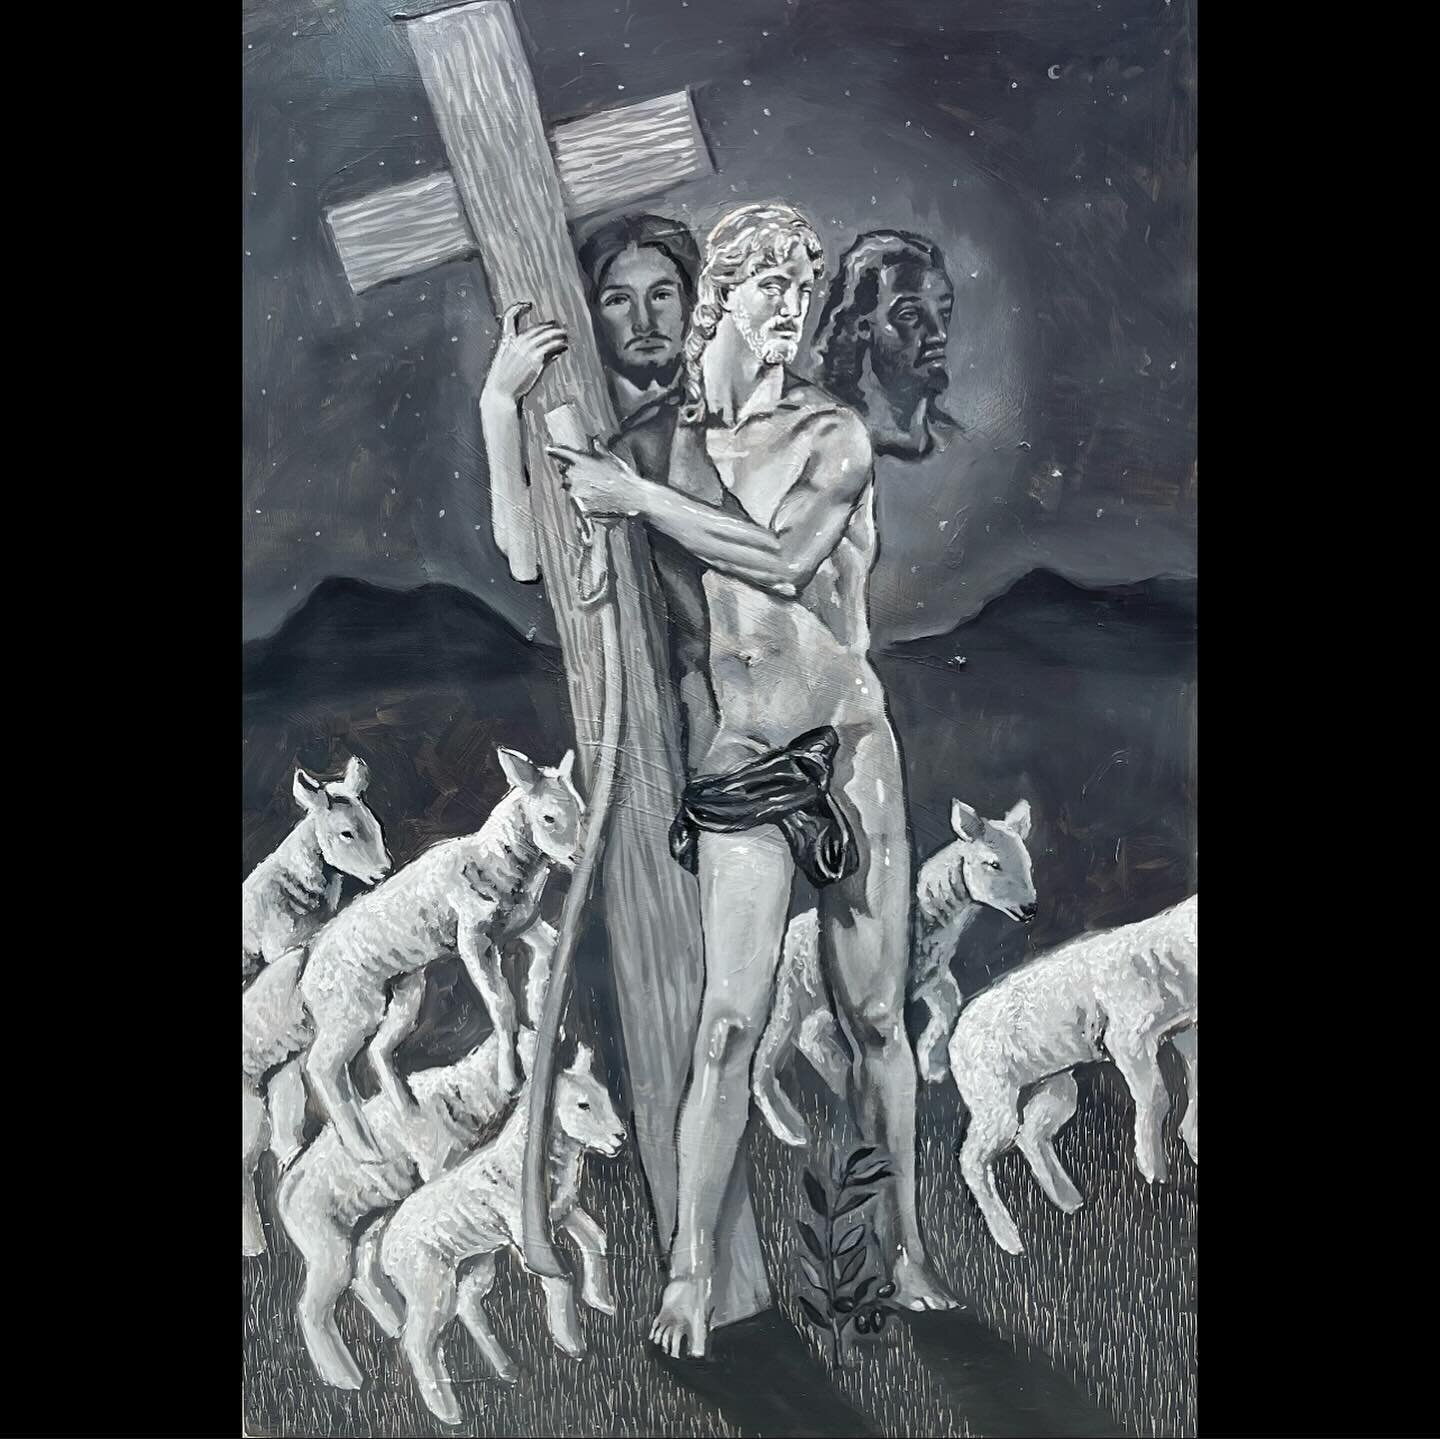 Cristo
20&rdquo;x30&rdquo;
Oil on panel
🩶🩶🩶🩶🩶🩶🩶🩶🩶🩶🩶🩶🩶🩶🩶🩶 🩶🩶🩶🩶🩶🩶🩶🩶🩶🩶🩶🩶🩶🩶🩶🩶 🩶🩶🩶🩶🩶🩶🩶🩶🩶🩶🩶🩶🩶🩶🩶🩶 🩶🩶🩶🩶🩶🩶🩶🩶🩶🩶🩶🩶🩶🩶🩶🩶 🩶🩶🩶🩶🩶🩶🩶🩶🩶🩶🩶🩶🩶🩶🩶🩶 🩶🩶🩶🩶🩶🩶🩶🩶🩶🩶🩶🩶🩶🩶🩶🩶
#queerart #h